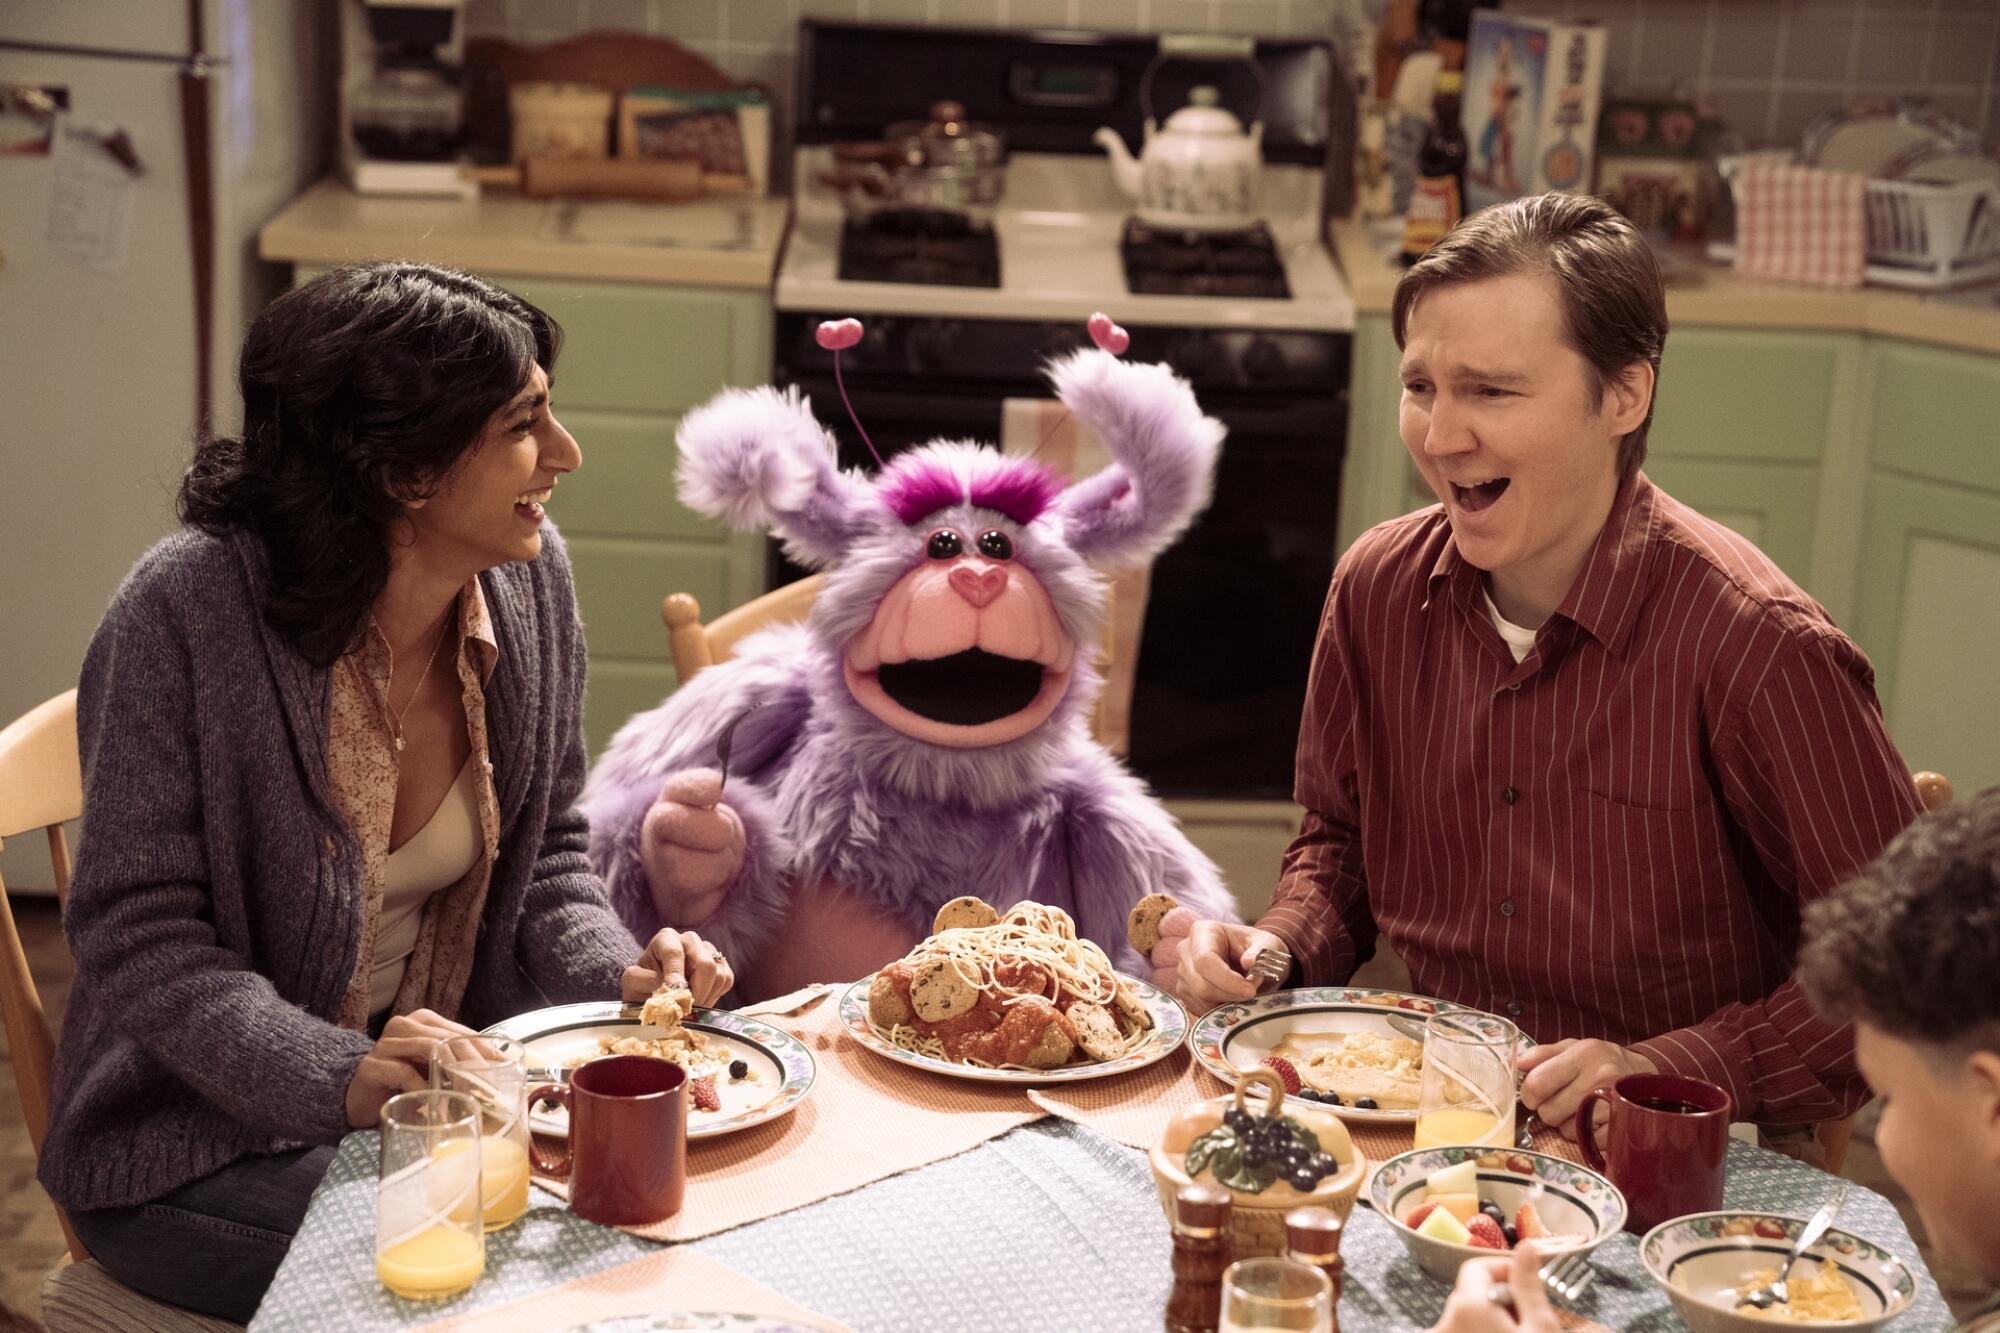 Paul Dano ist Gaststar in "Fantasien" als Mann mit Gefühlen für eine Alf-ähnliche Muppet